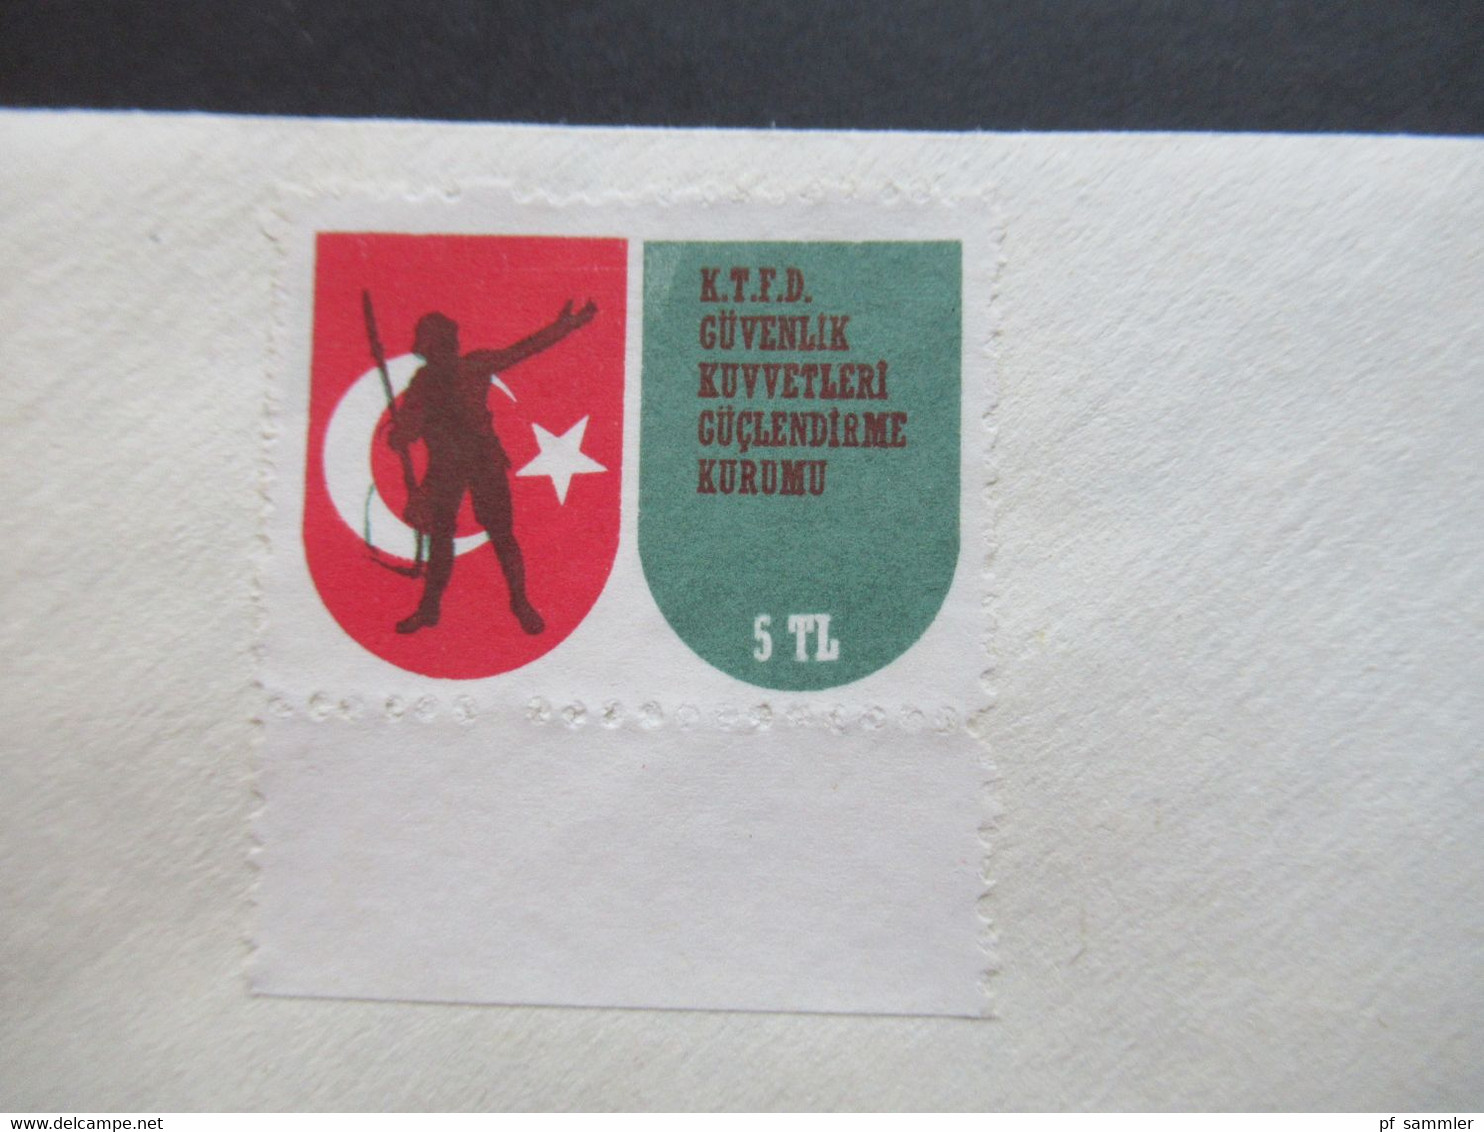 Türkisch Zypern ca. 1979 / 81 Amts und Dienstbriefe Regierung / Feldpost / Zensur verschiedene Stempel insg. 40 Belege!!